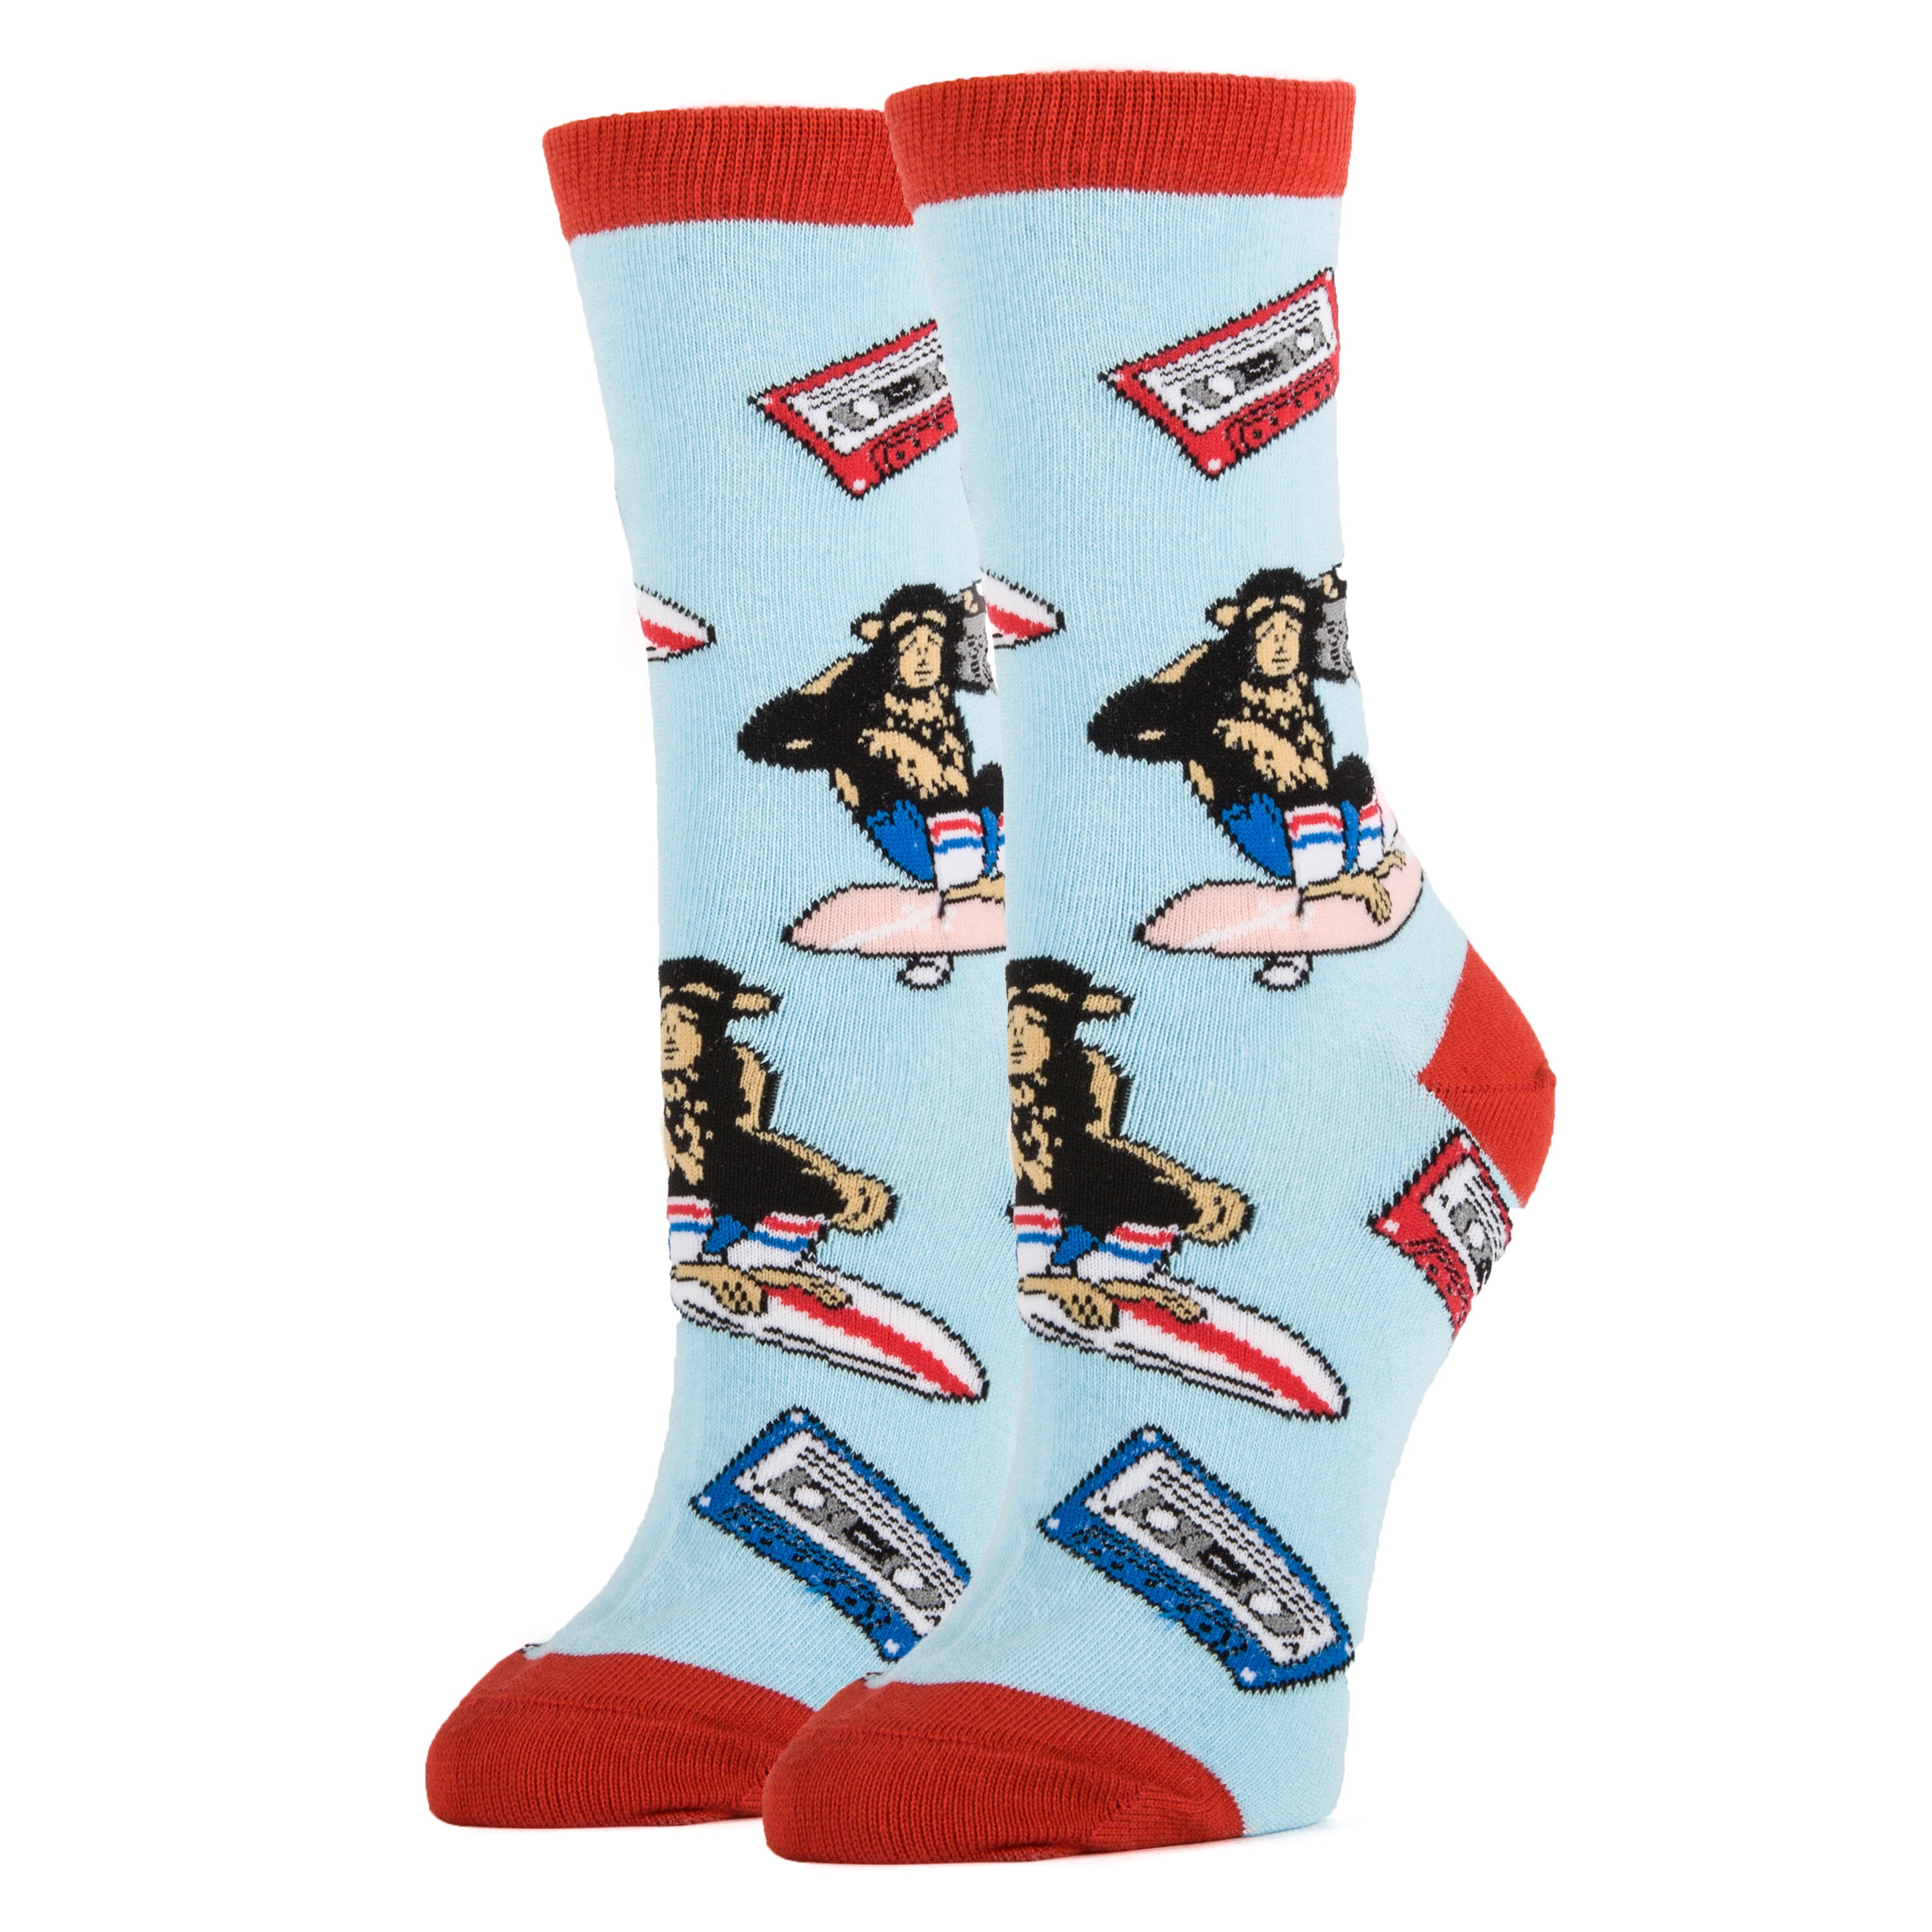 Funky Munky Socks | Novelty Crew Socks For Women